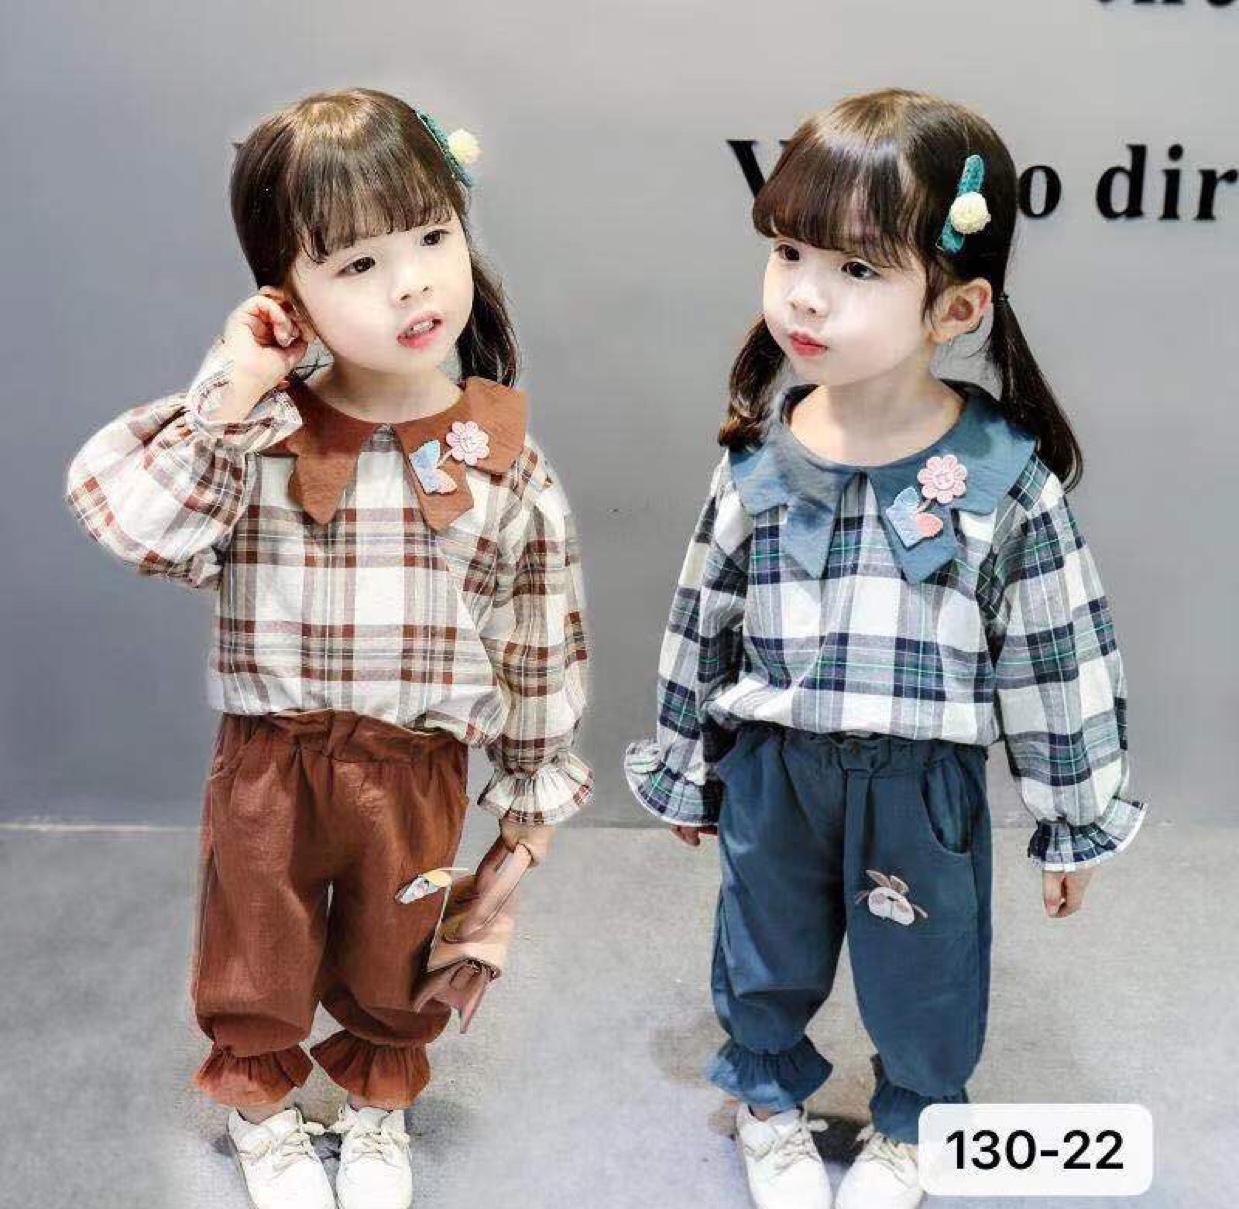 童装外贸地摊夜市女童秋装套装儿童网红洋气2020新款韩版时髦中小童装女孩秋季衣服潮